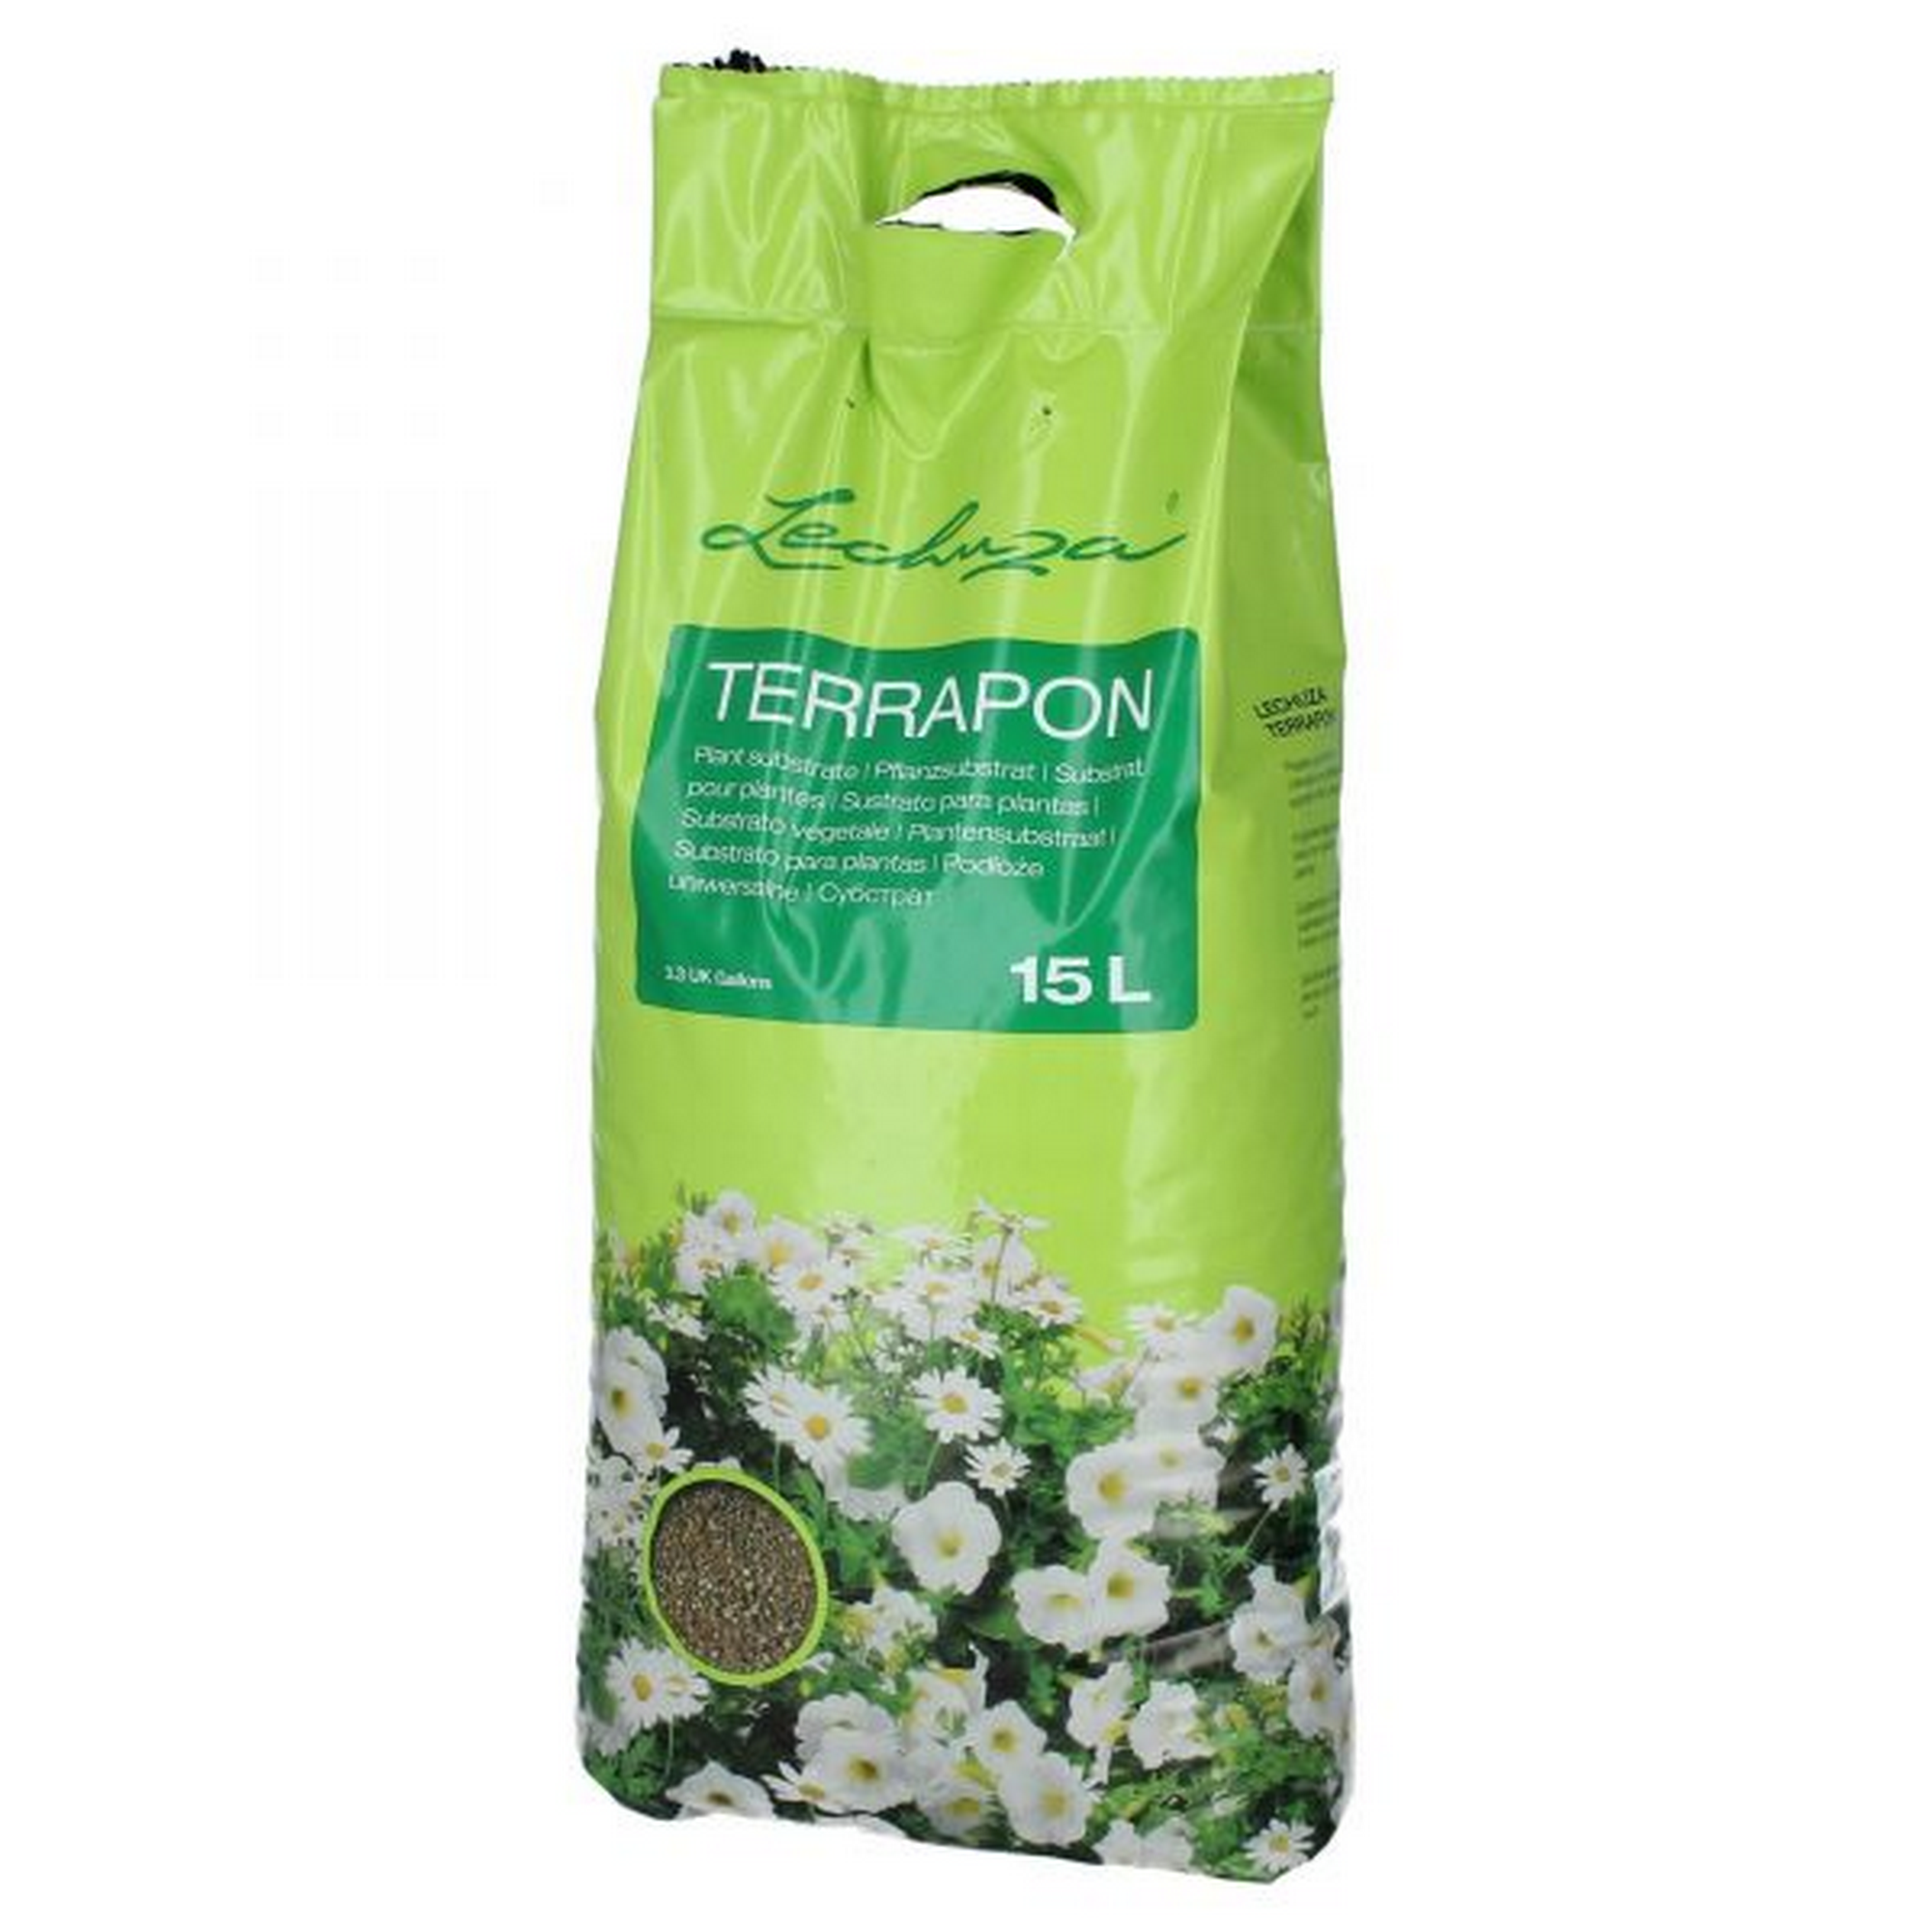 Kübelpflanzensubstrat 'TERRAPON' 15 l + product picture